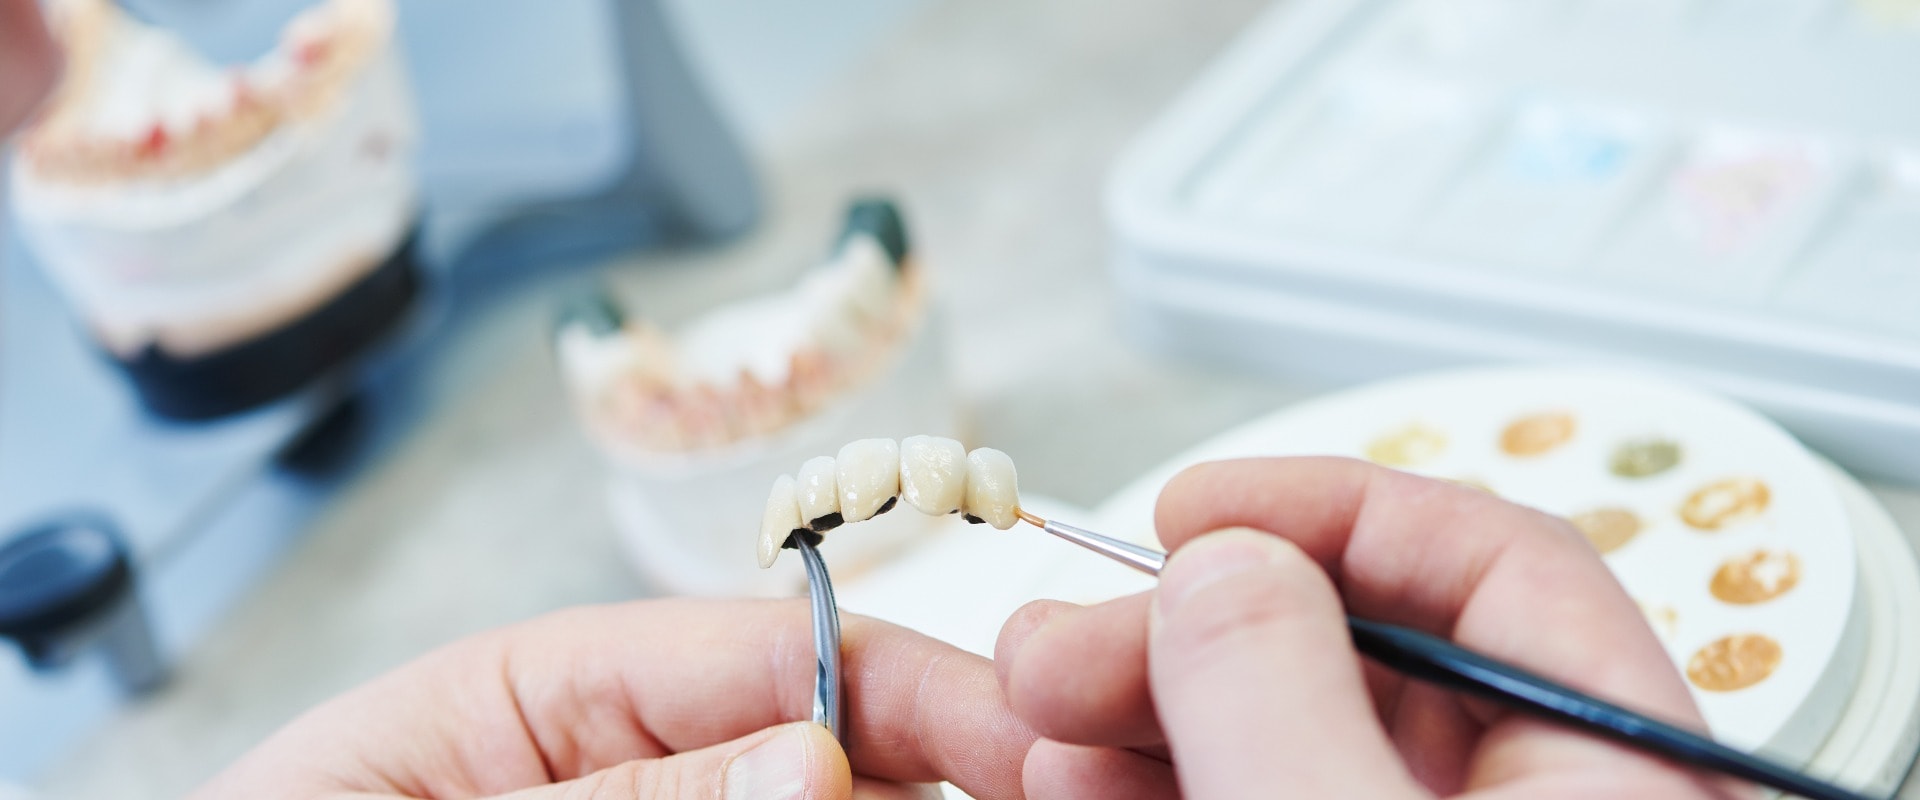 dental prosthesis work. Painting teeth